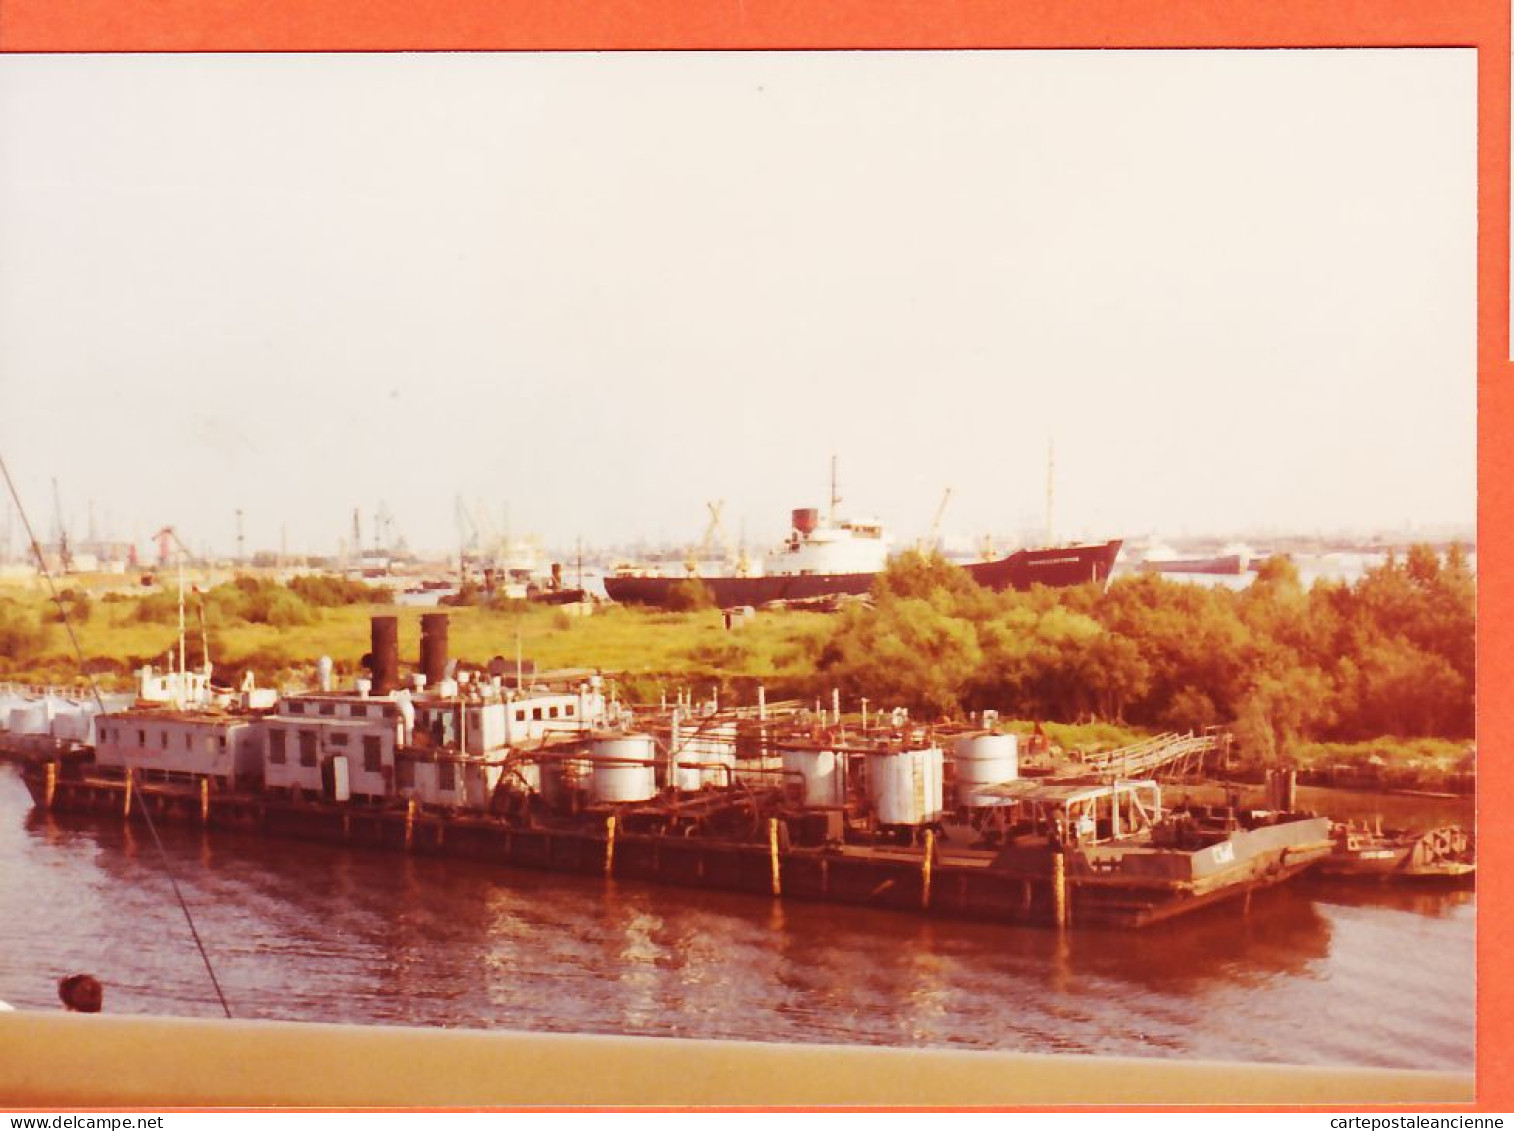 05852 / LENINGRAD ЛЕНИНГРАД CCCP Union Soviétique Barge Dépôt Pétrolier Flottant Entrée Port Aout 1972 Photo 13,5x10cm - Russie